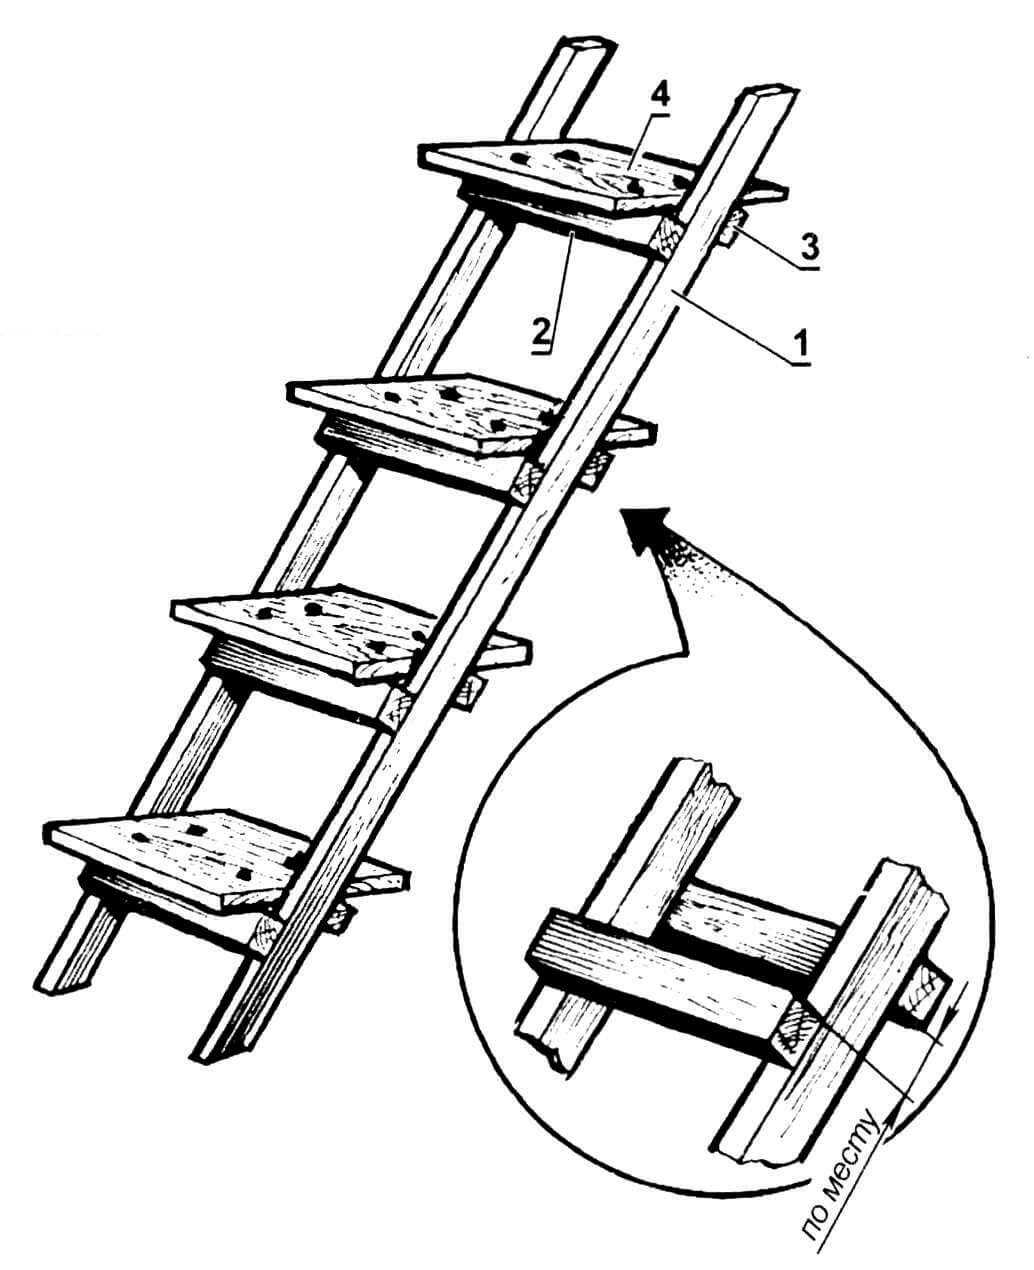 Лестница стремянка своими руками из дерева: поэтапная инструкция